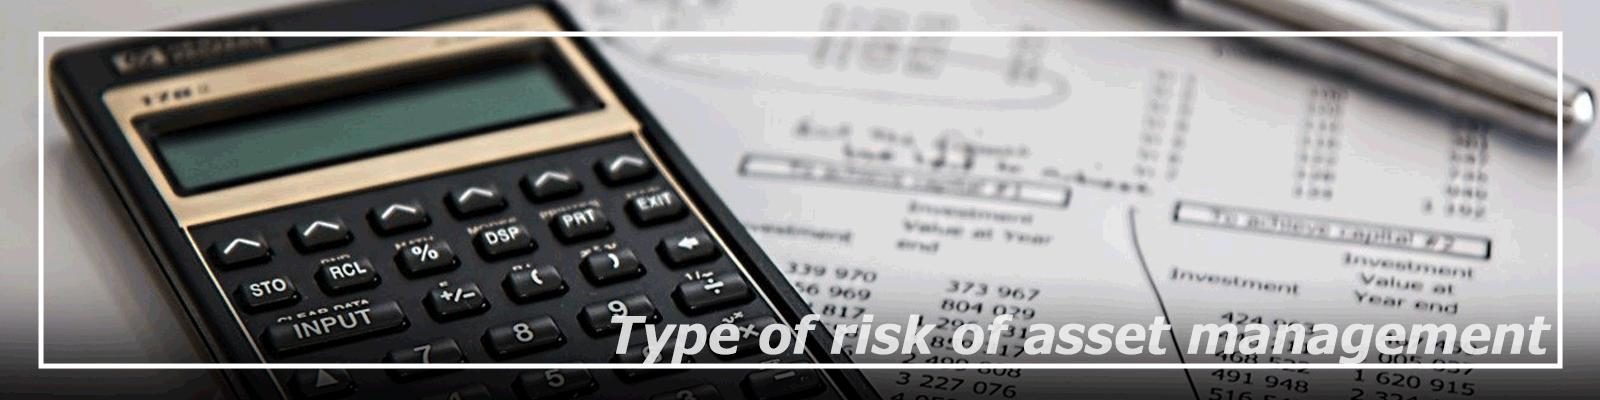 資産運用における様々なリスク